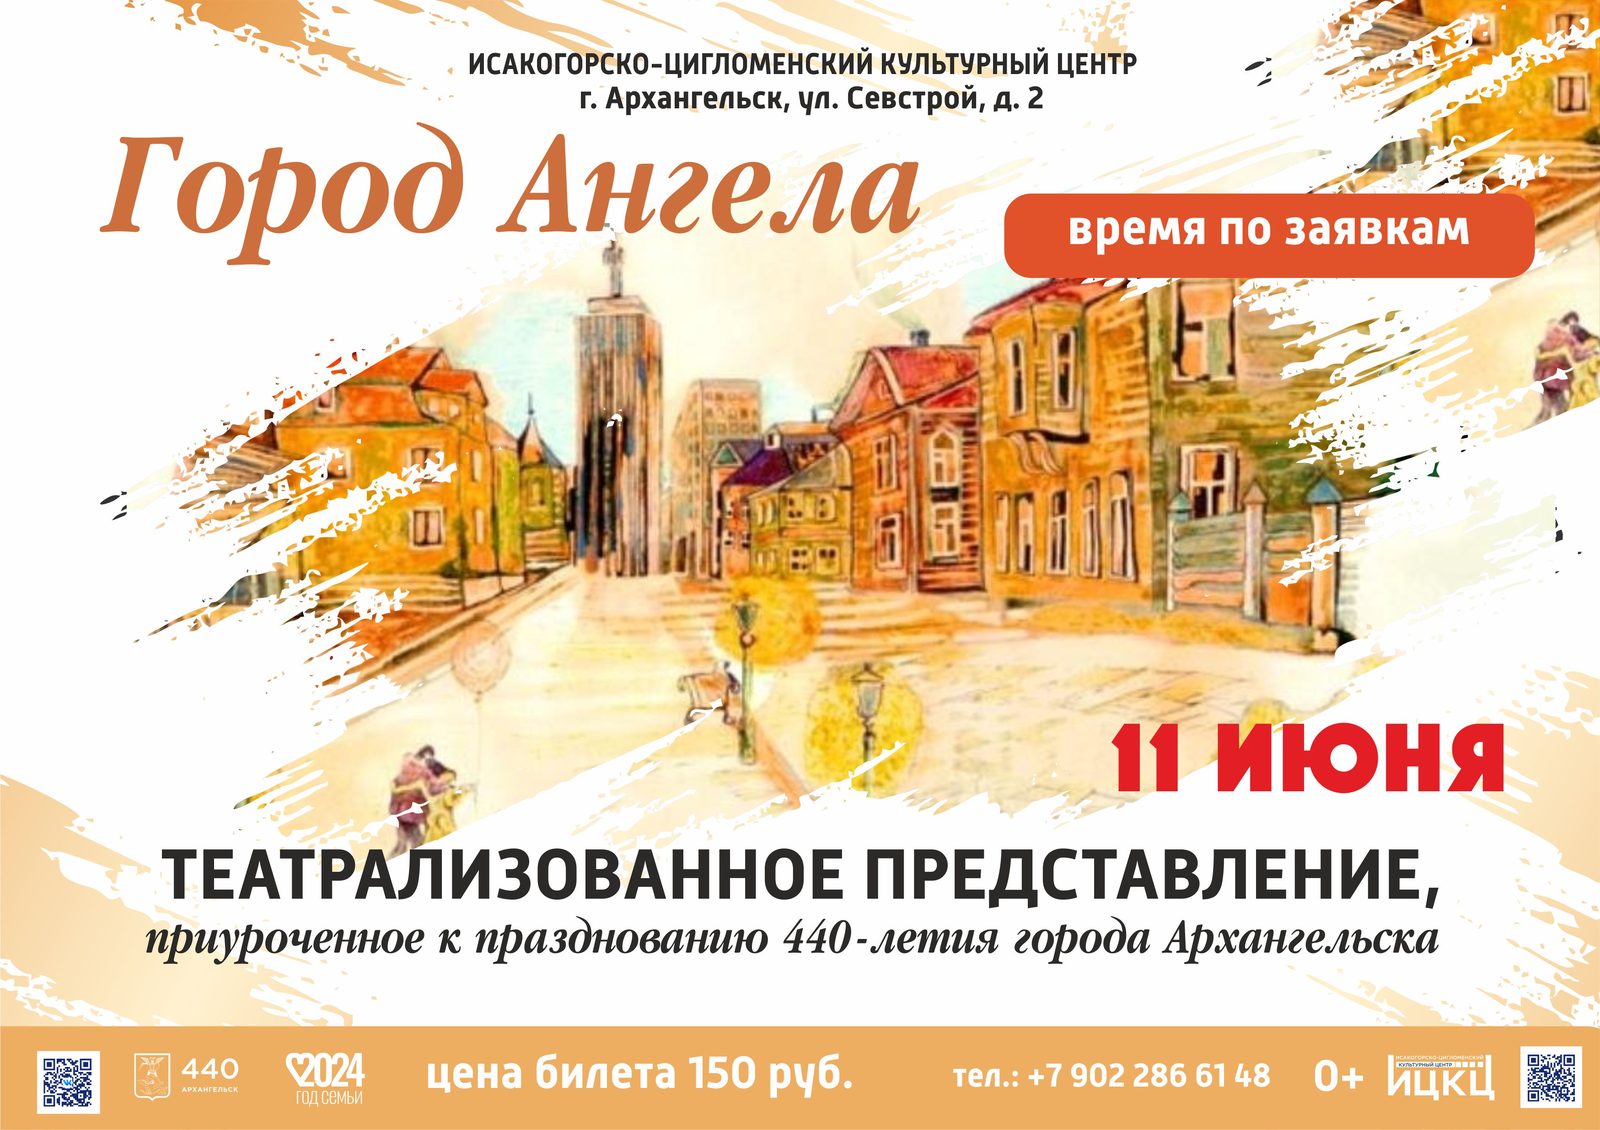 Театрализованное представление, приуроченное к празднованию 440-летия города Архангельска «Город Ангела»